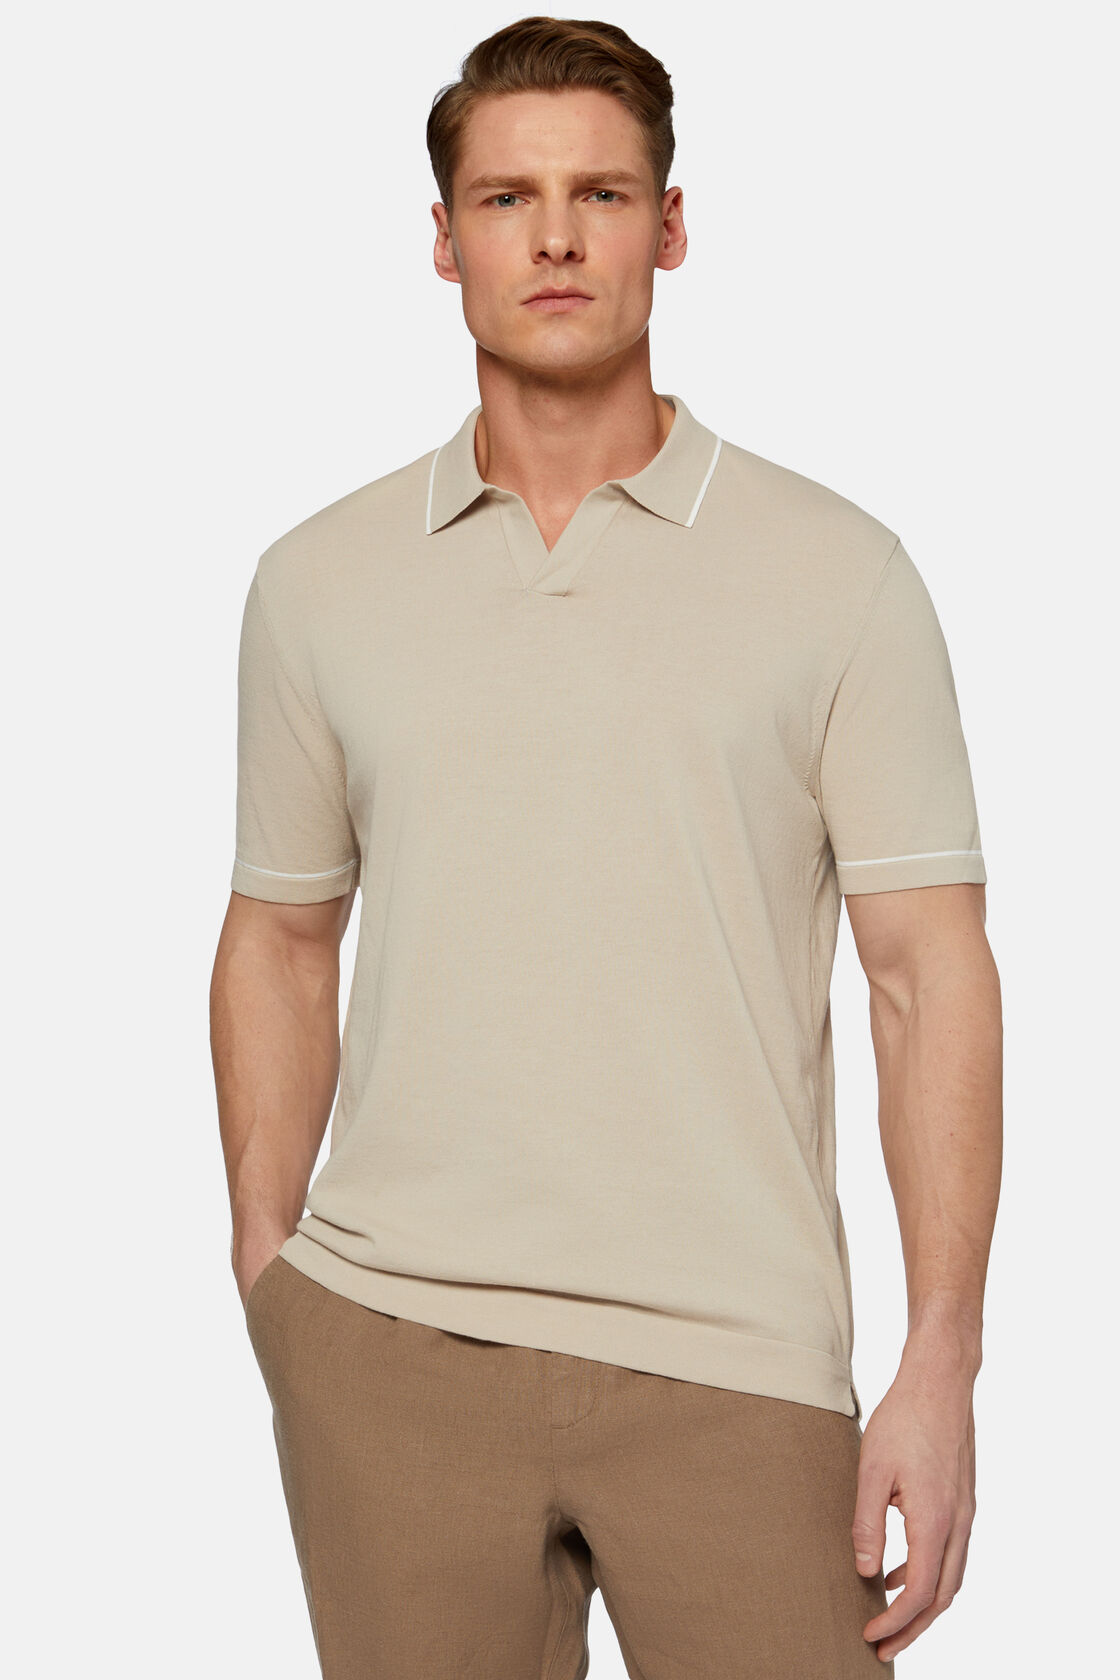 Πλεκτό μπλουζάκι τύπου πόλο από βαμβακερό κρεπ σε μπεζ χρώμα, Beige, hi-res